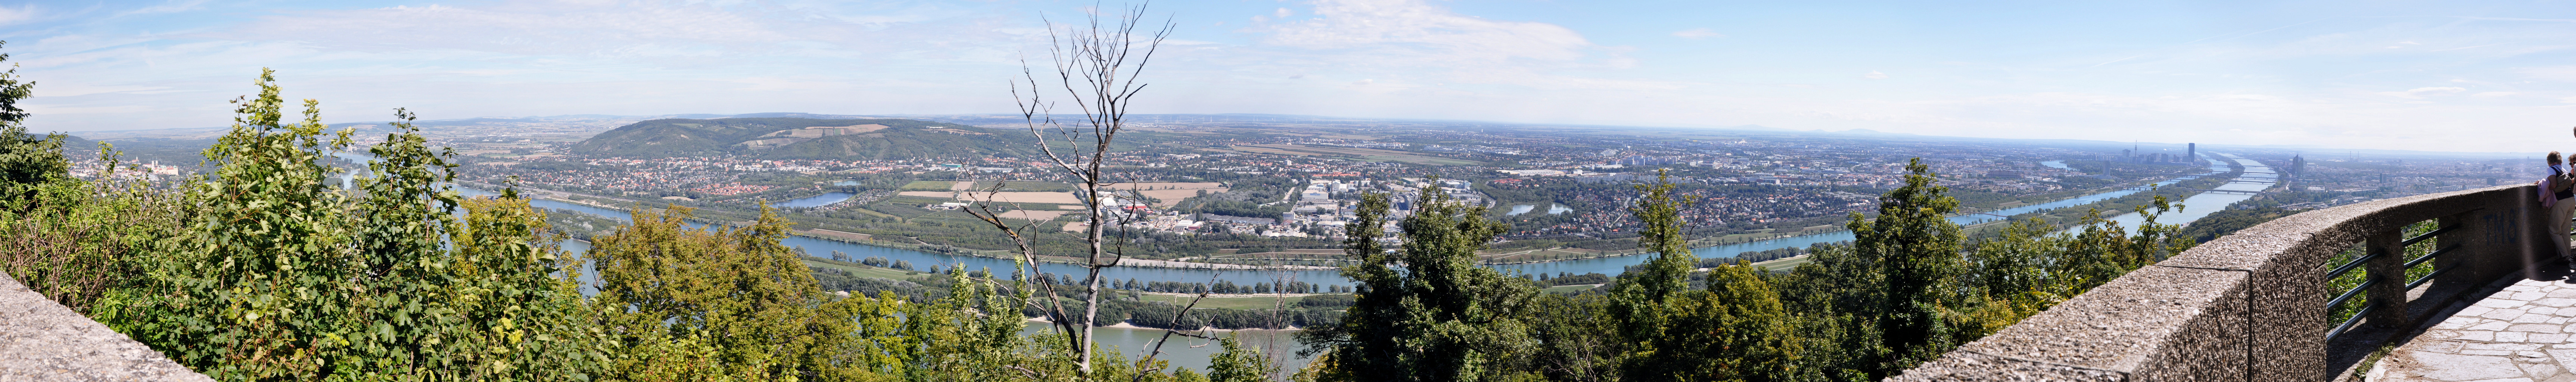  |Die Donau fließt in Nord-Süd-Richtung durchs Stadtgebiet